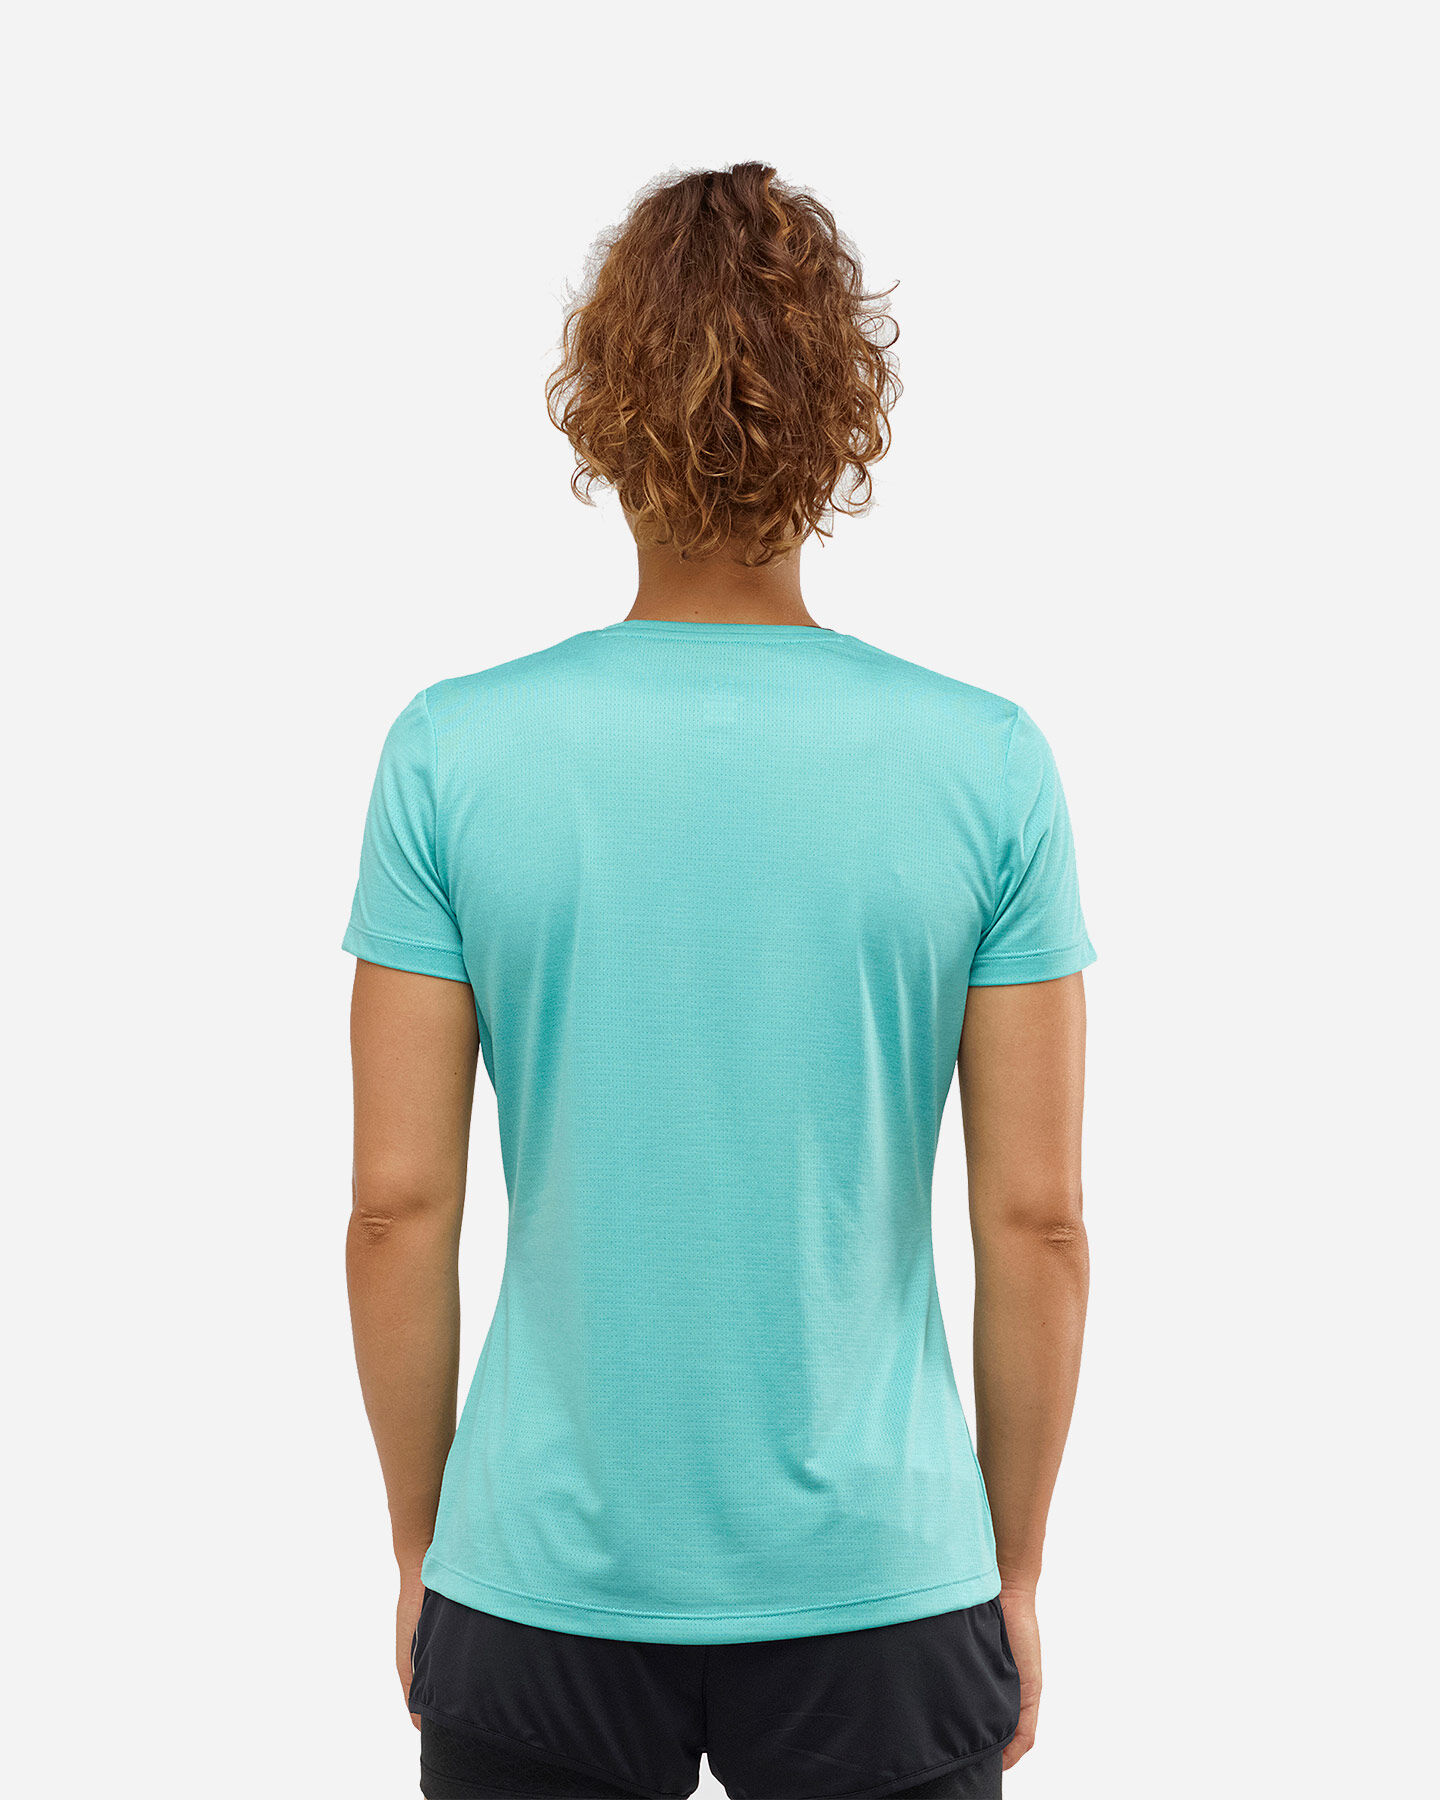  T-Shirt SALOMON AGILE W S5173854|UNI|XS scatto 2